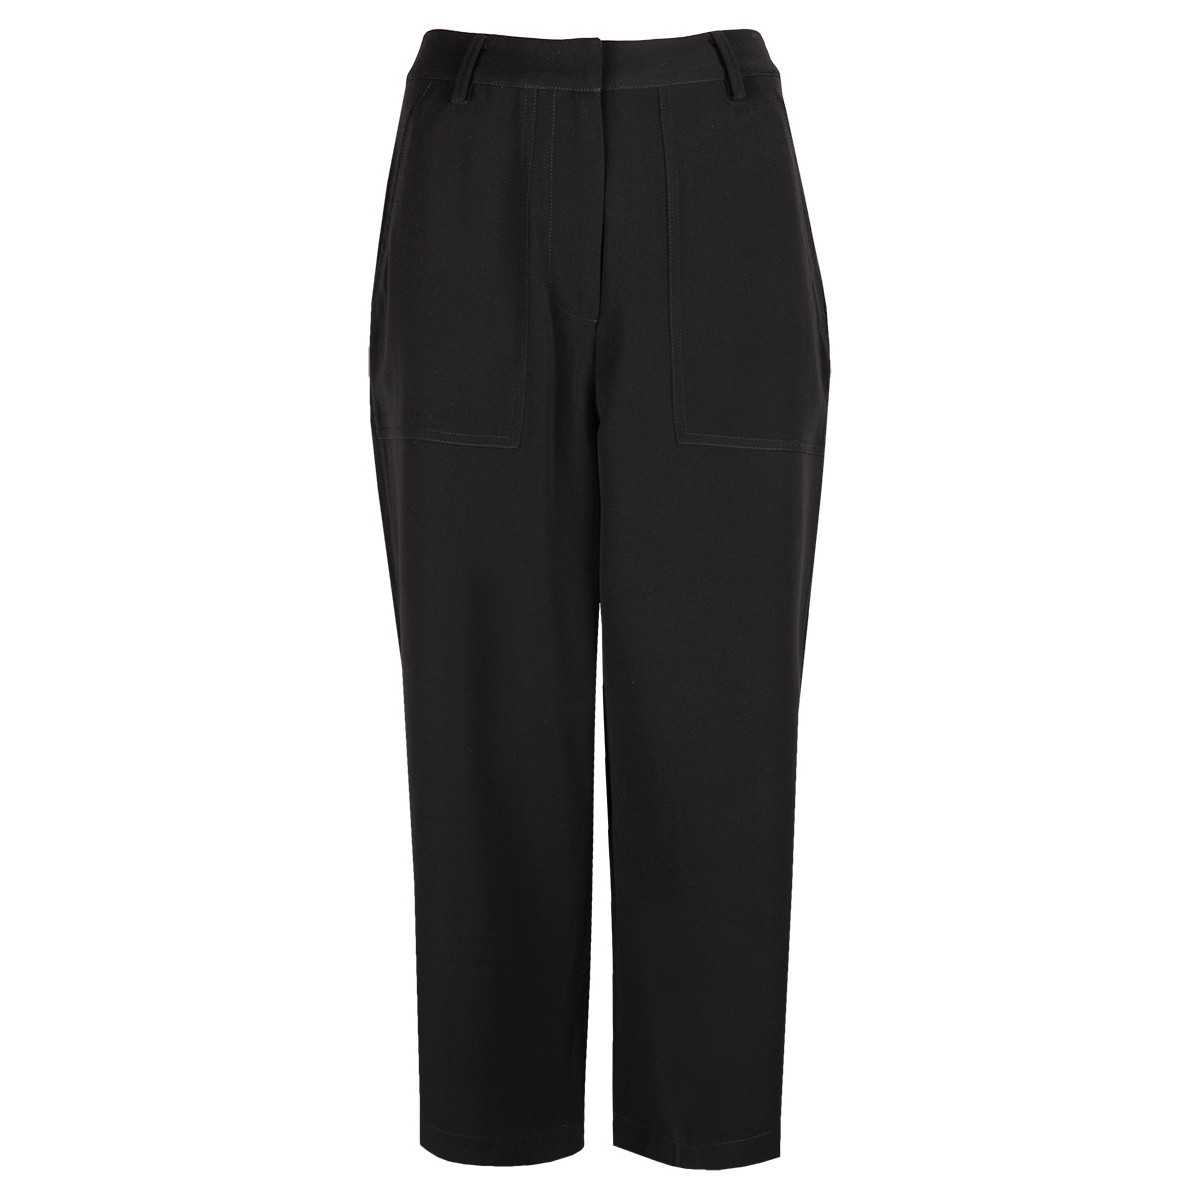 Textiel Dames Broeken / Pantalons Calvin Klein Jeans J20J204772 Zwart